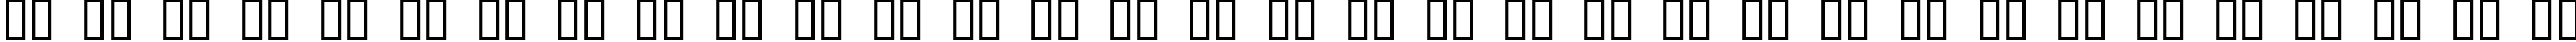 Пример написания русского алфавита шрифтом Valium